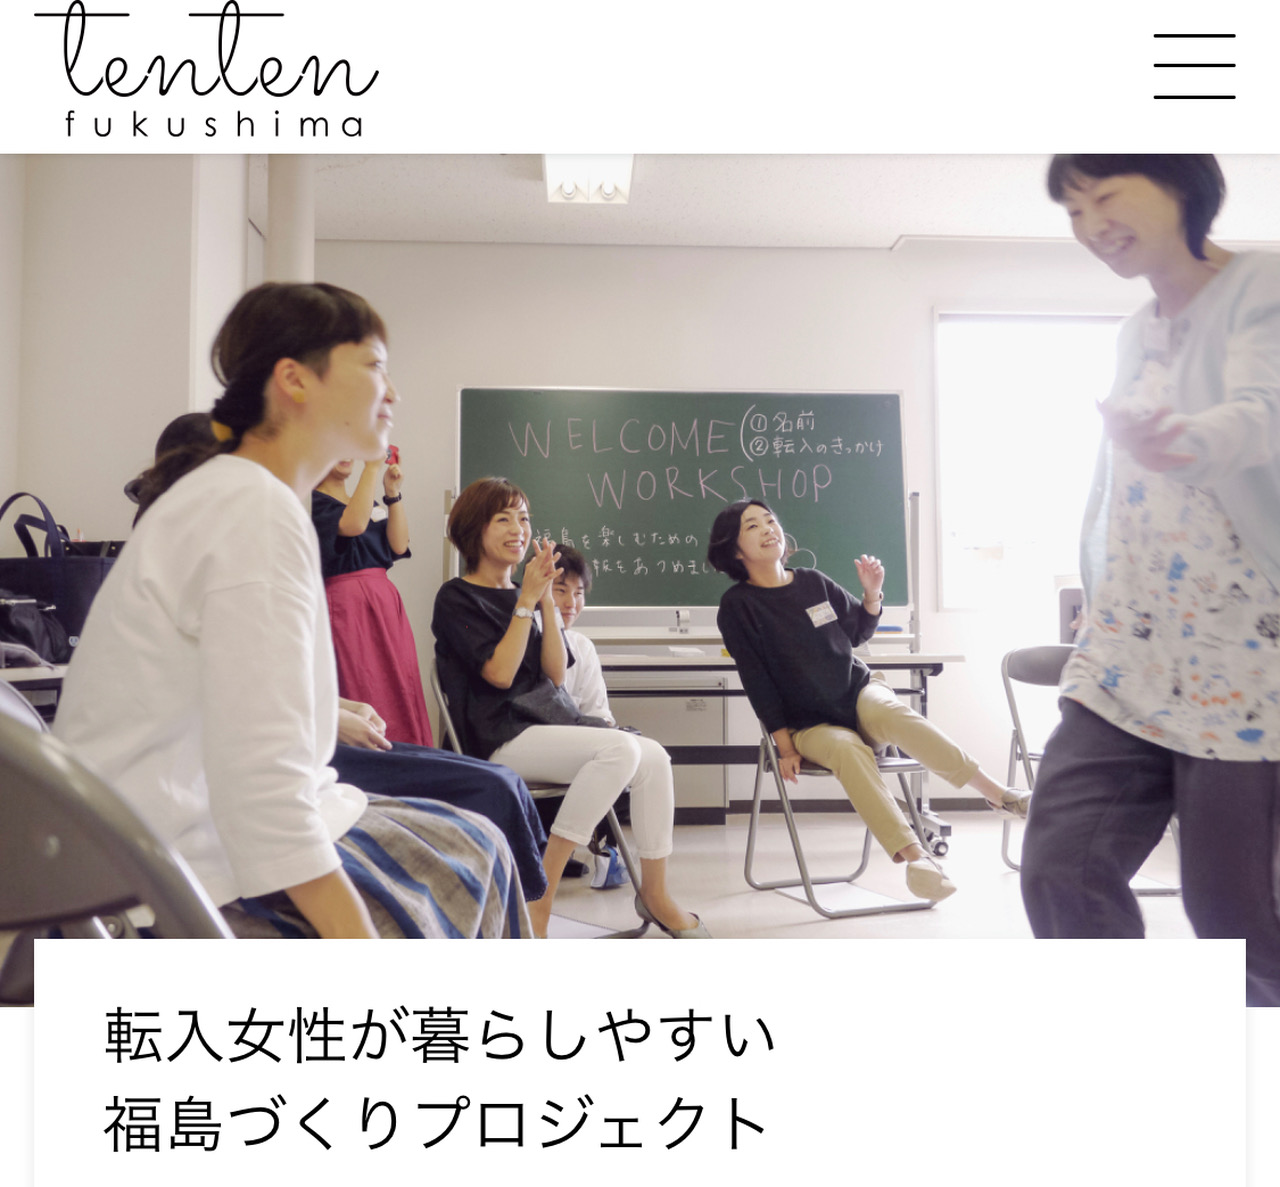 福島に移住・転入した女性が、福島の暮らしの情報を発信するサイトの画像